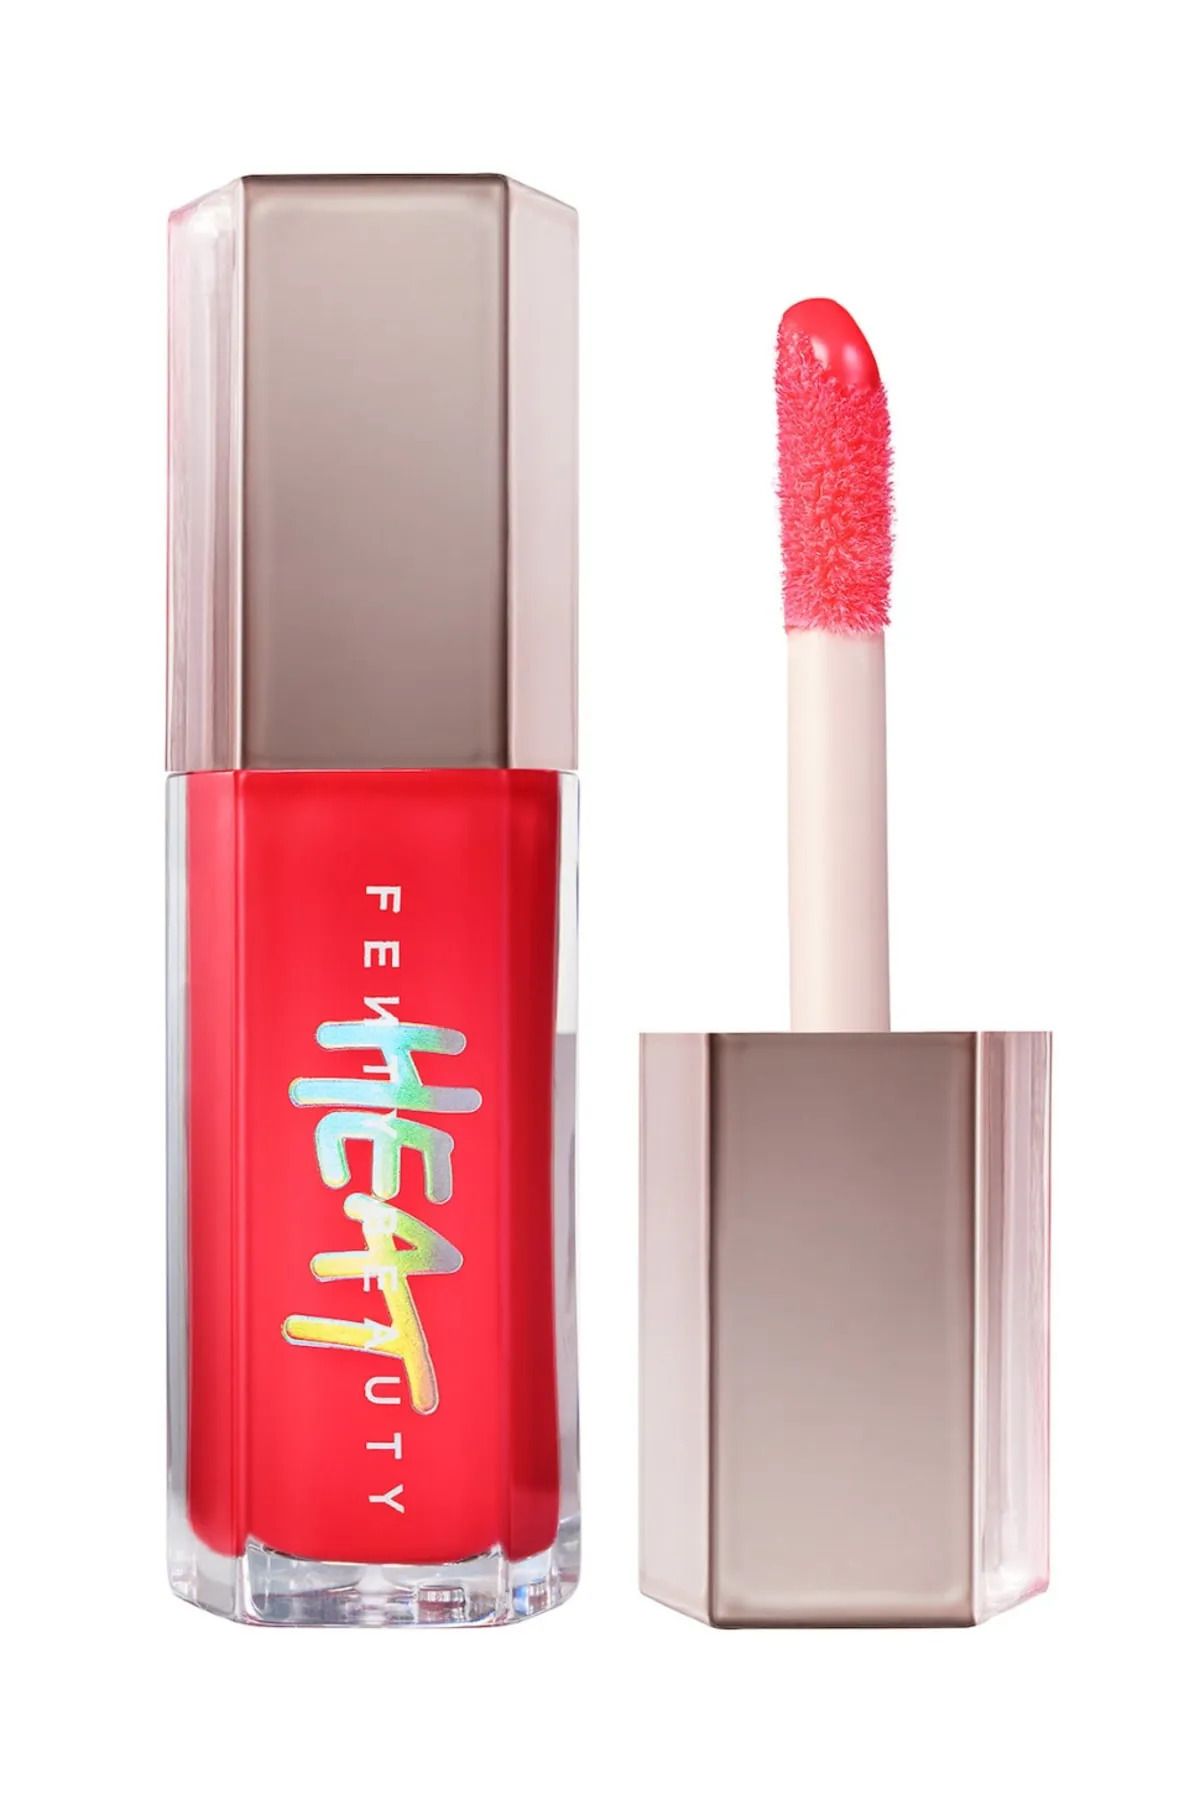 FENTY BEAUTY Gloss Bomb Heat Universal Lip Luminizer - Hot Cherry Pinkestcosmetics